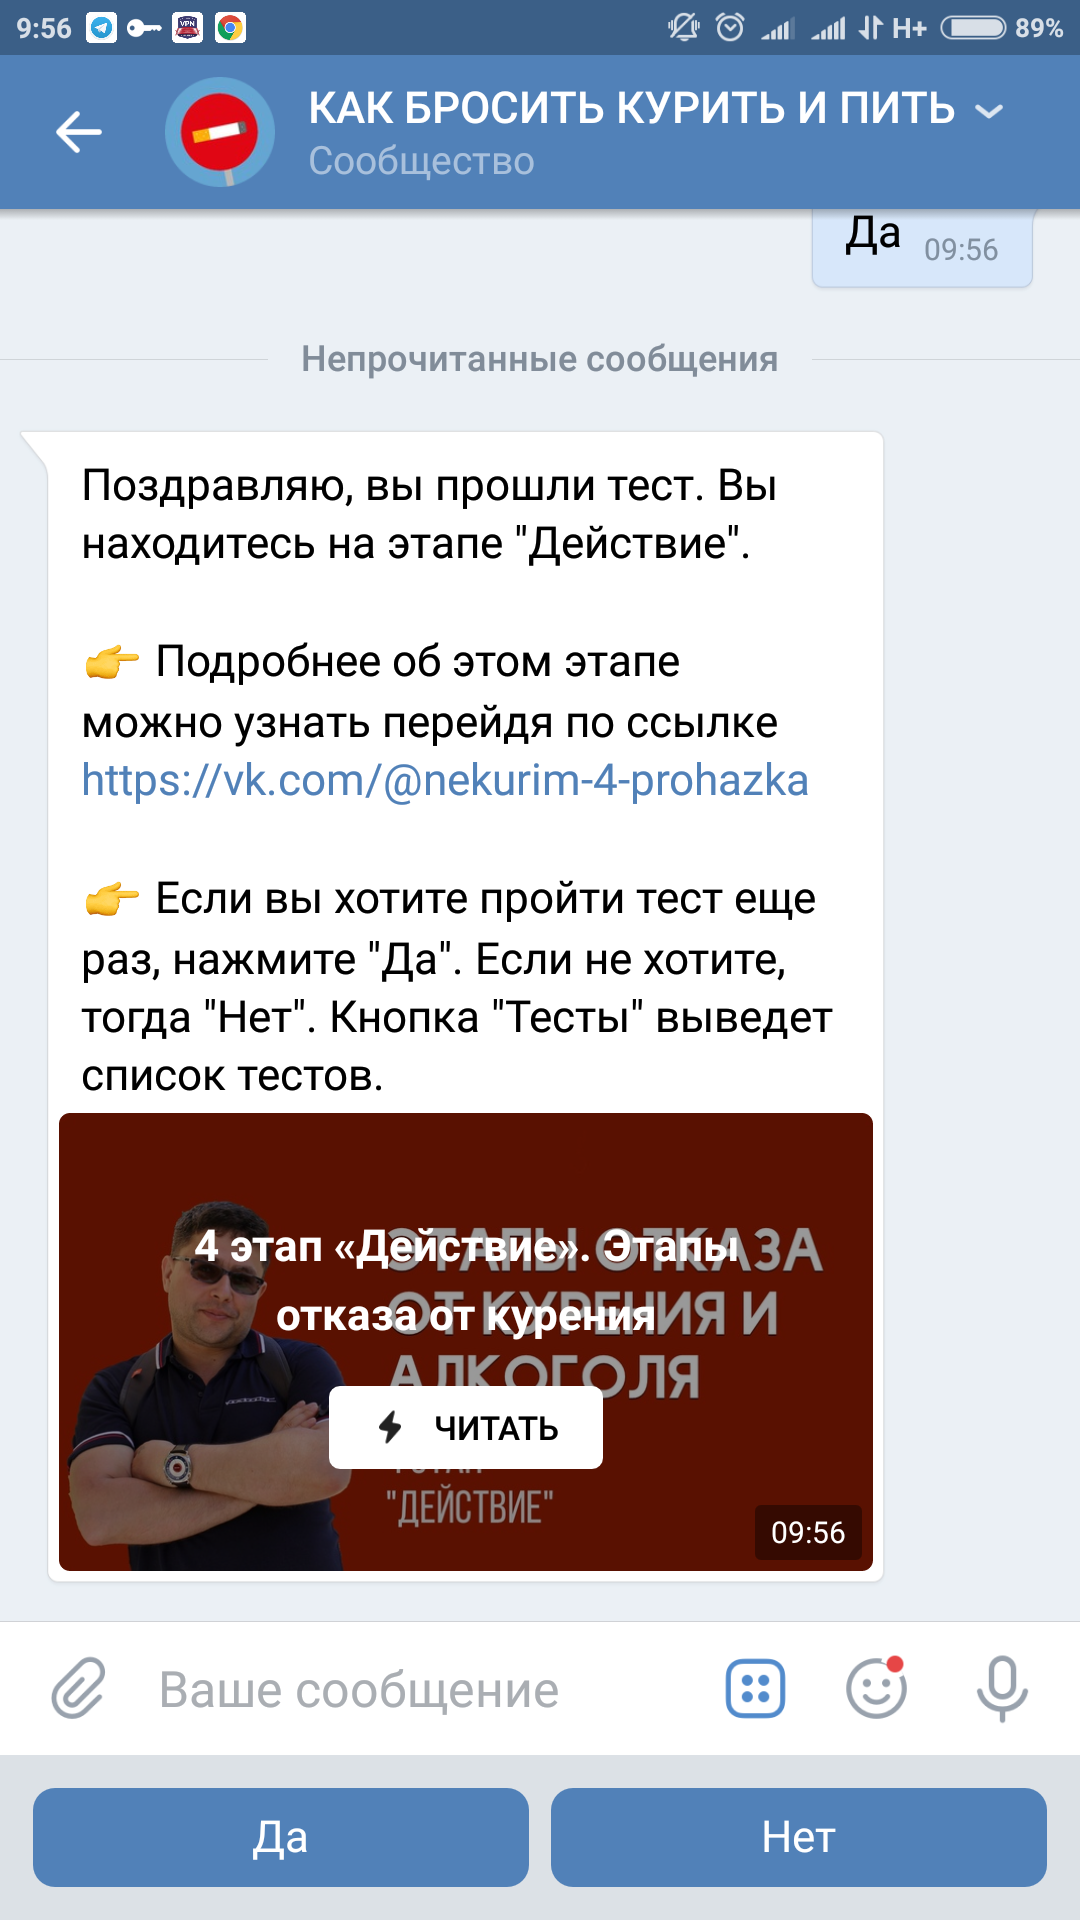 Screenshot_2018-09-24-09-56-20-969_com.vkontakte.android.png